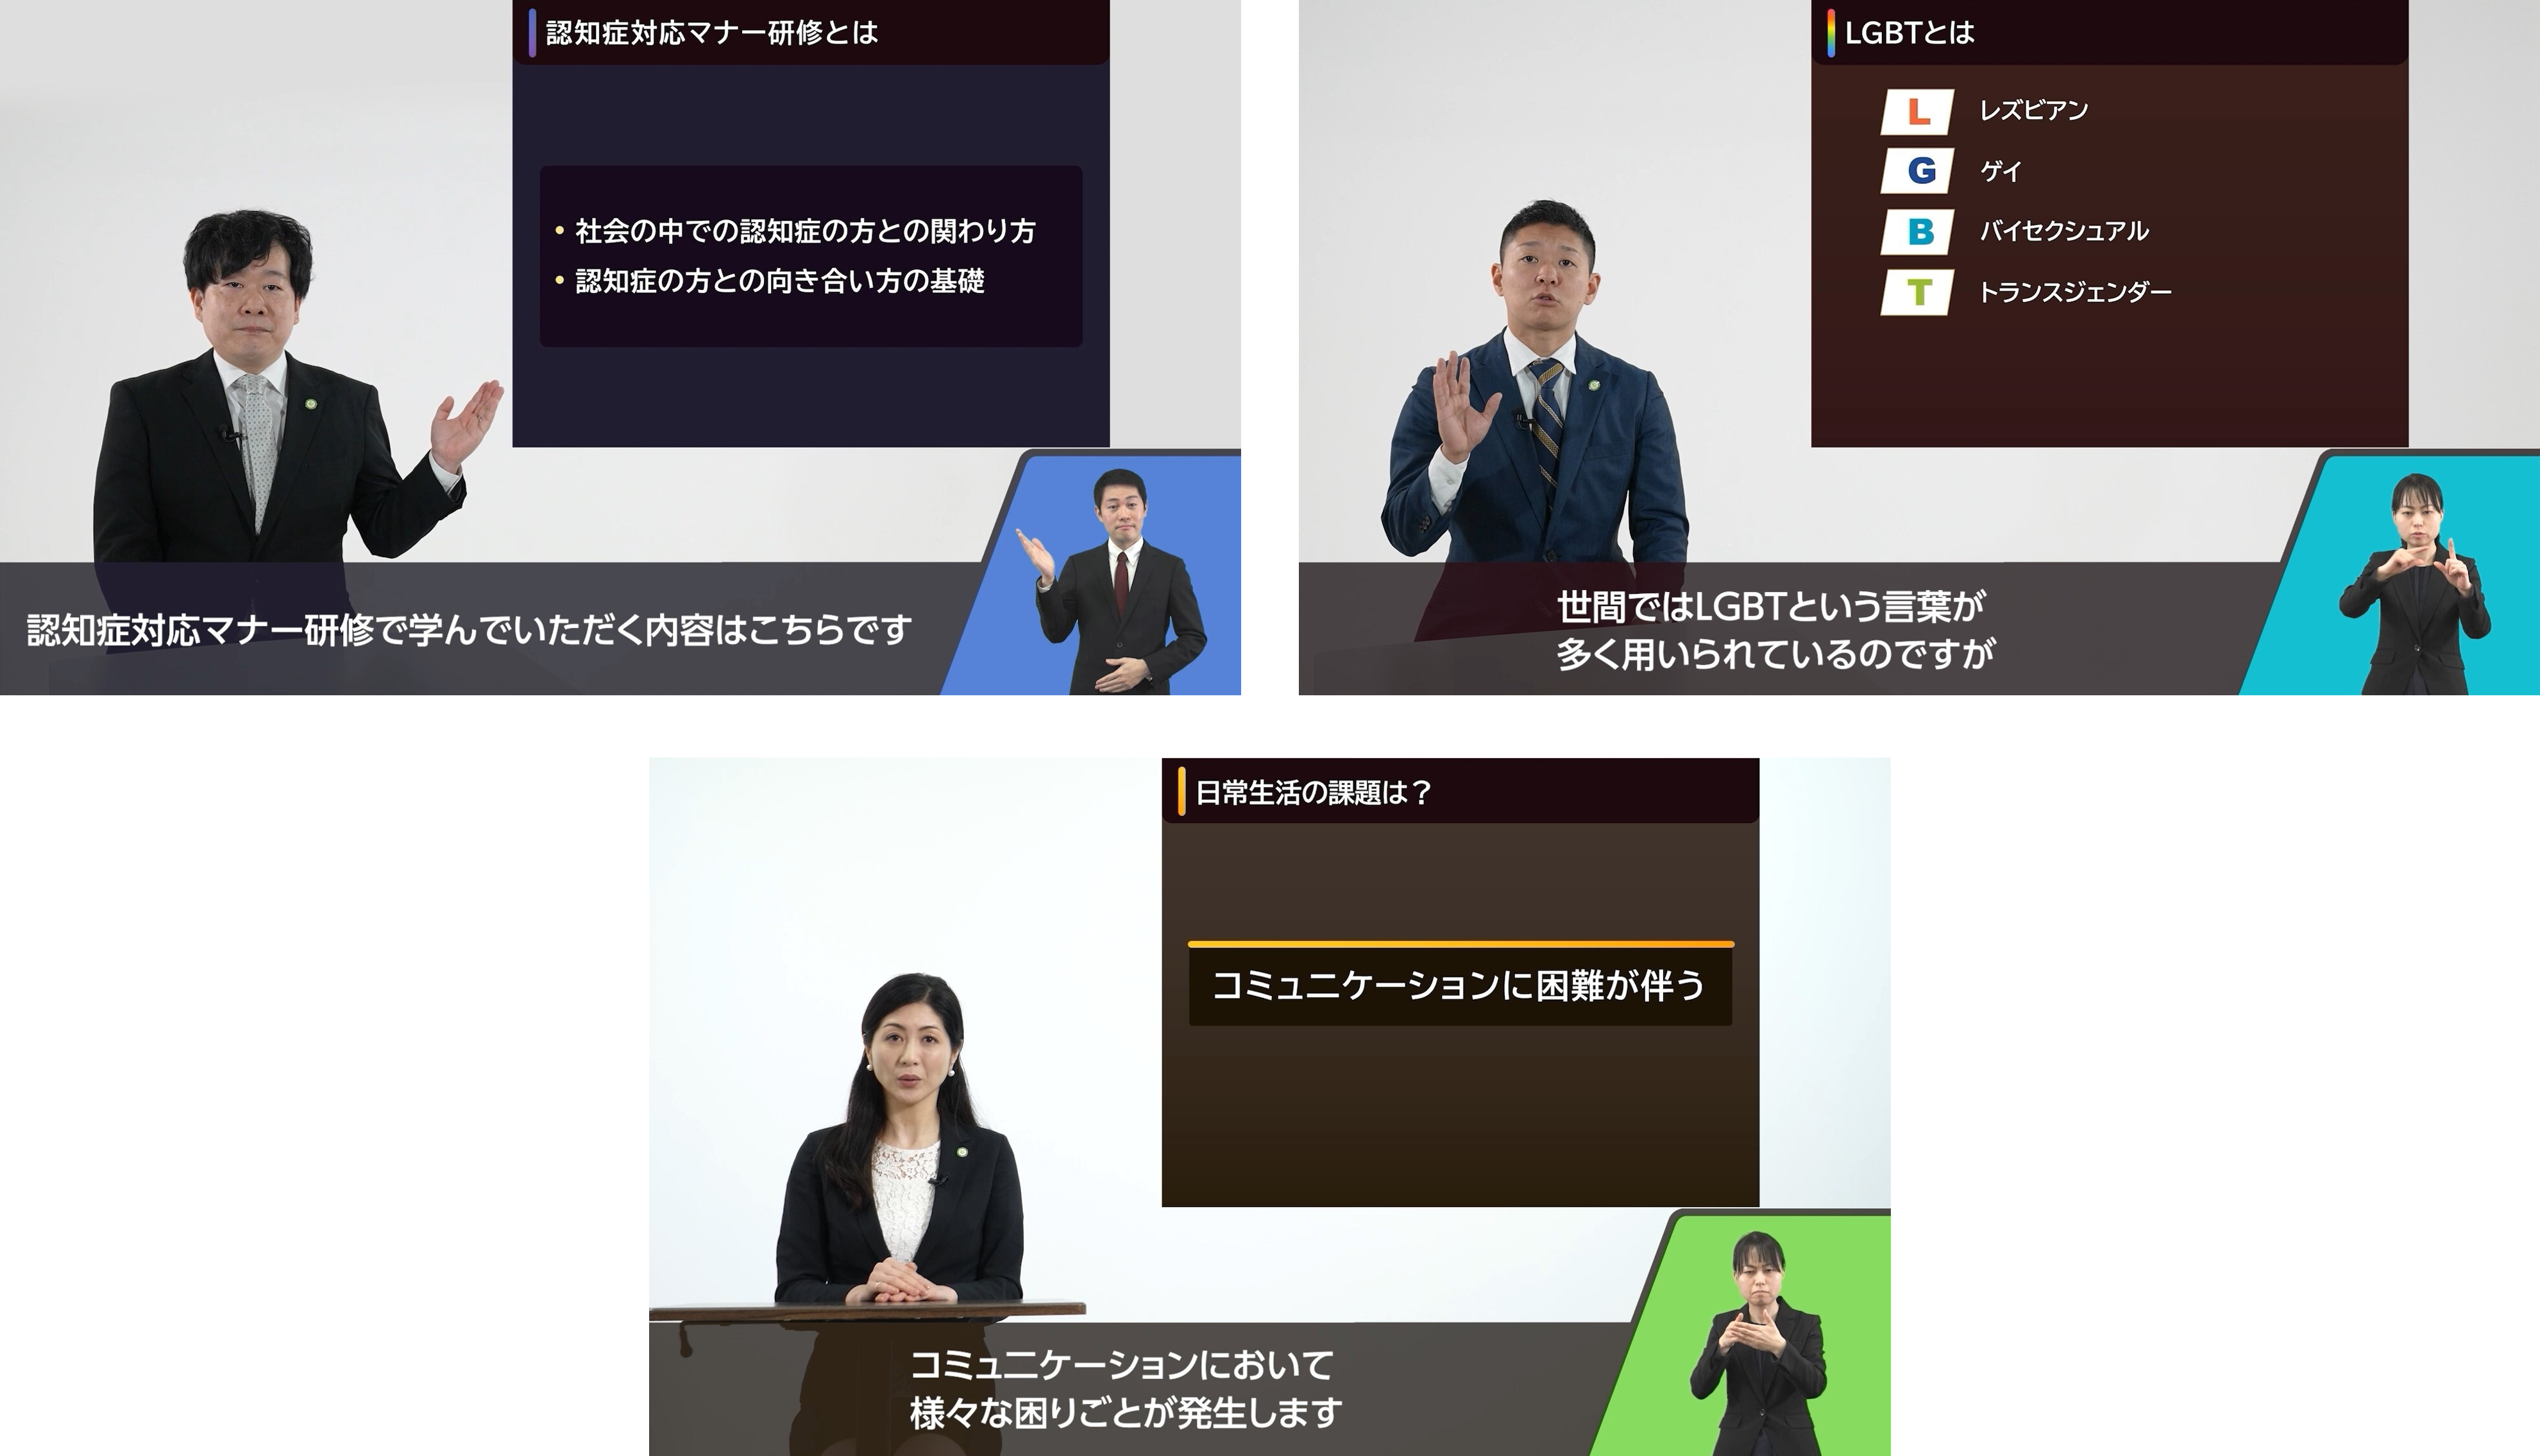 【写真】eラーニングのイメージ画像_【左に講師、右にスライドが映し出され、下に字幕と手話通訳が出ている。